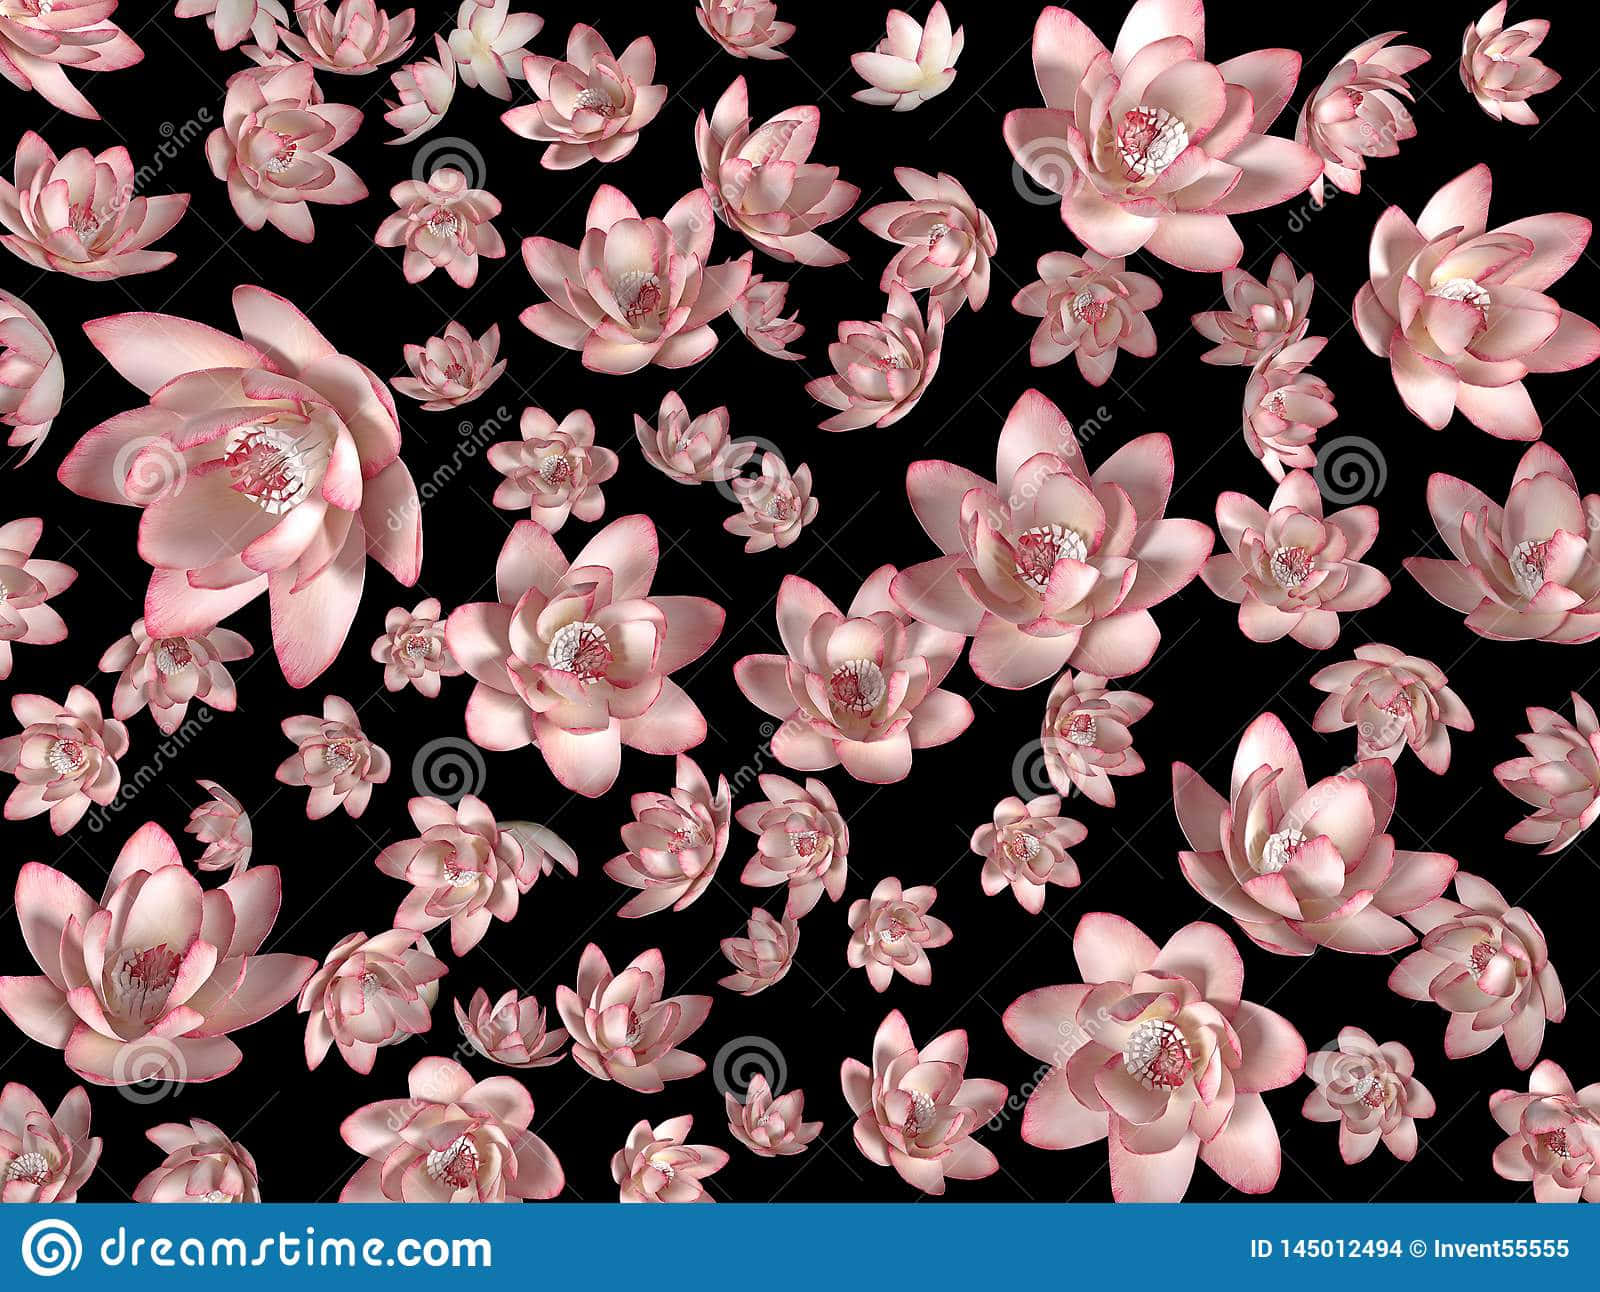 En farverig blanding af skønhed - en sort og pink blomst! Wallpaper